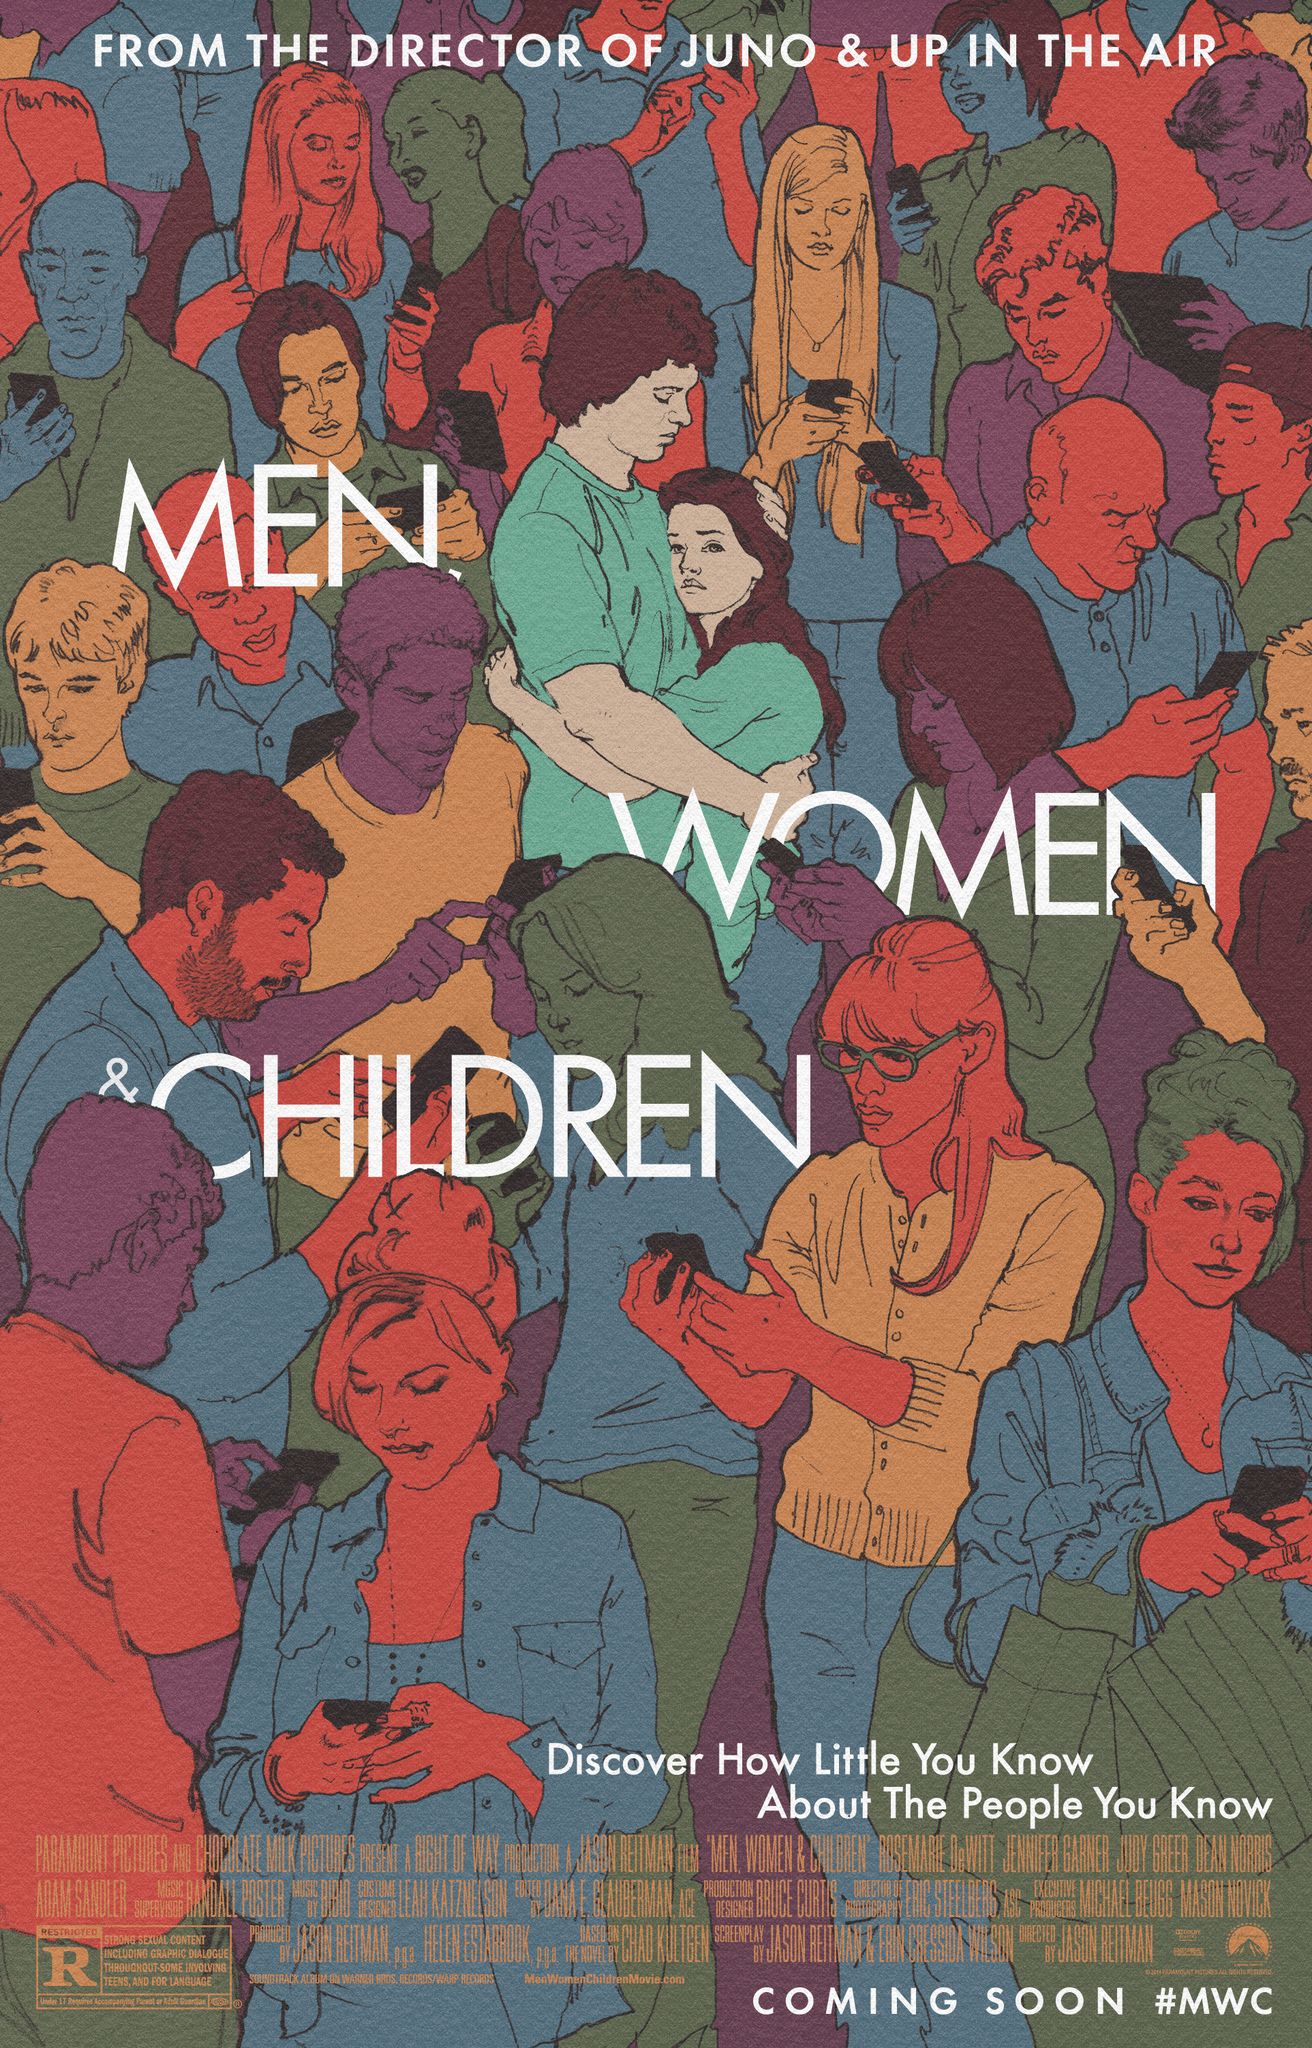 Cartel de la película Hombres, mujeres y niños 2014.